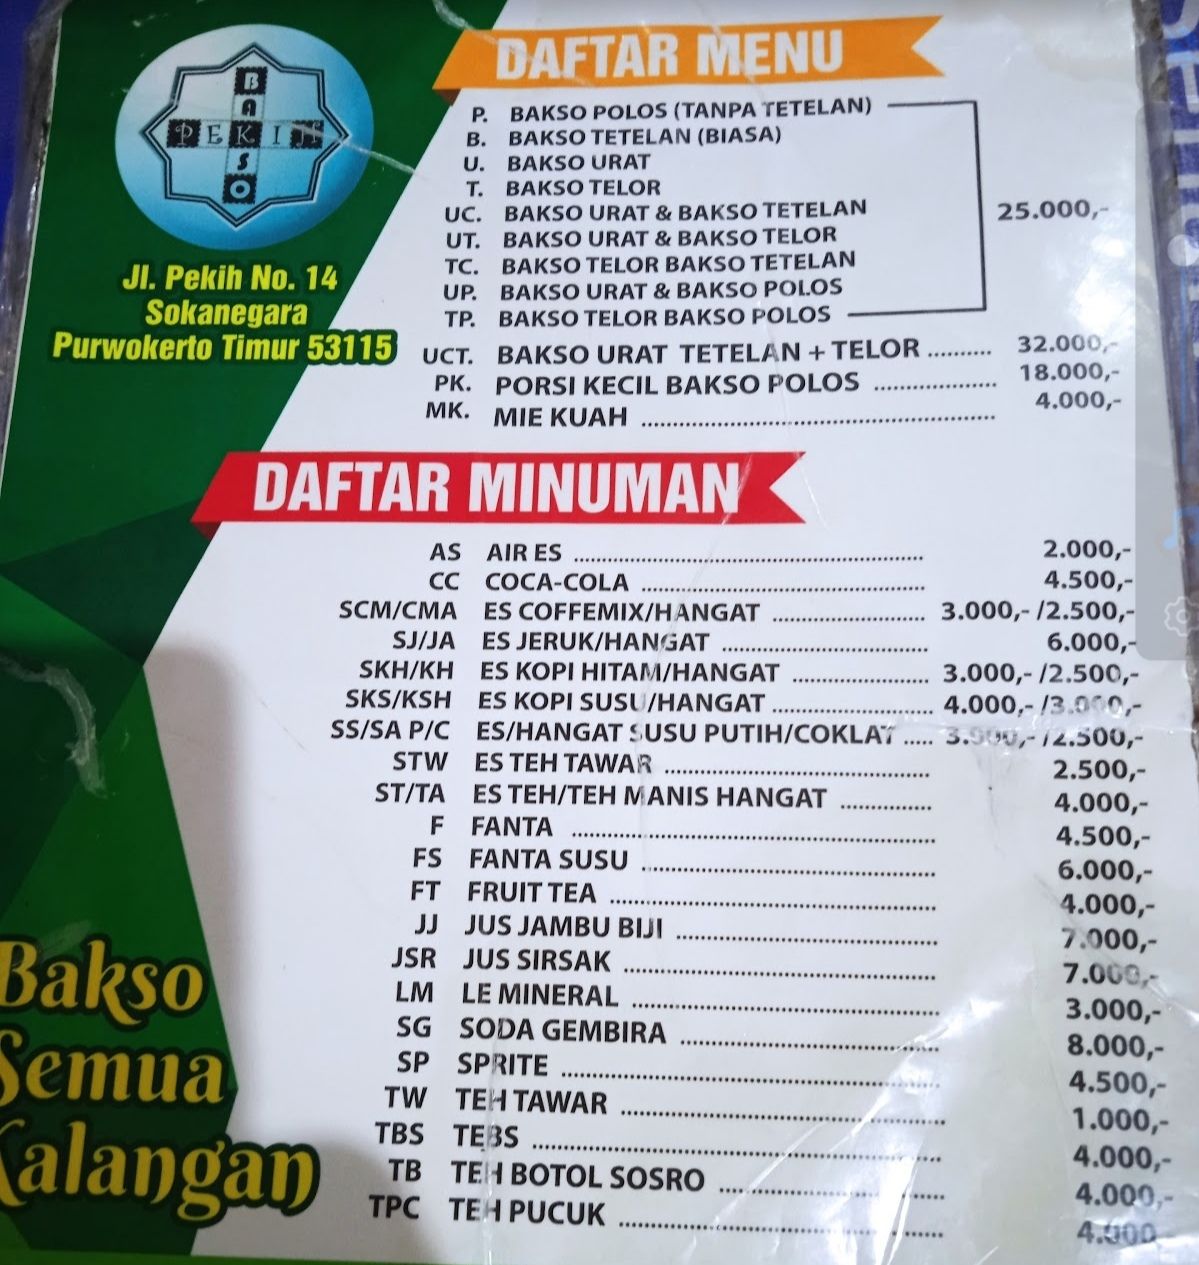 Daftar menu kuliner bakso Purwokerto 